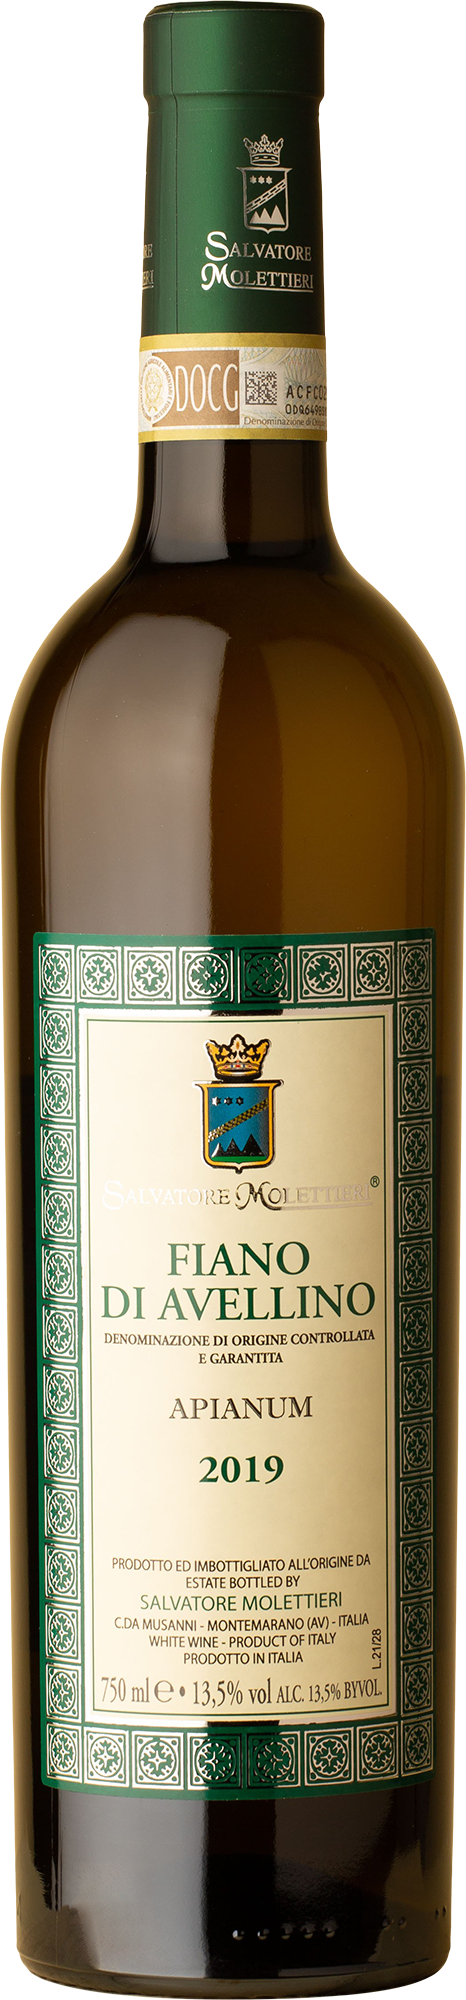 Salvatore Moliettieri - Fiano di Avelino 2019 White Wine